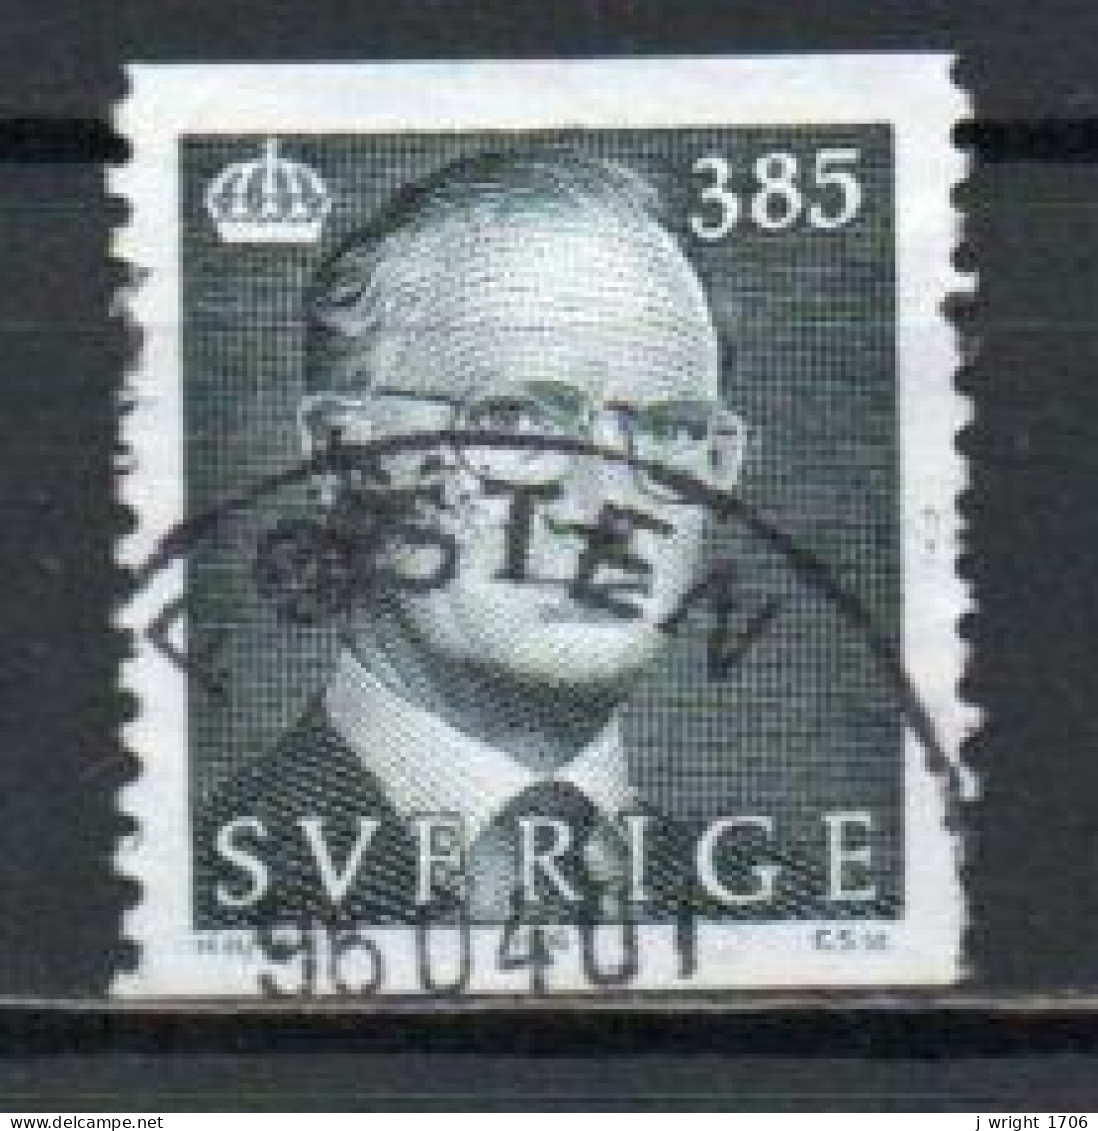 Sweden, 1995, King Carl XVI Gustaf, 3.70kr, USED - Gebraucht